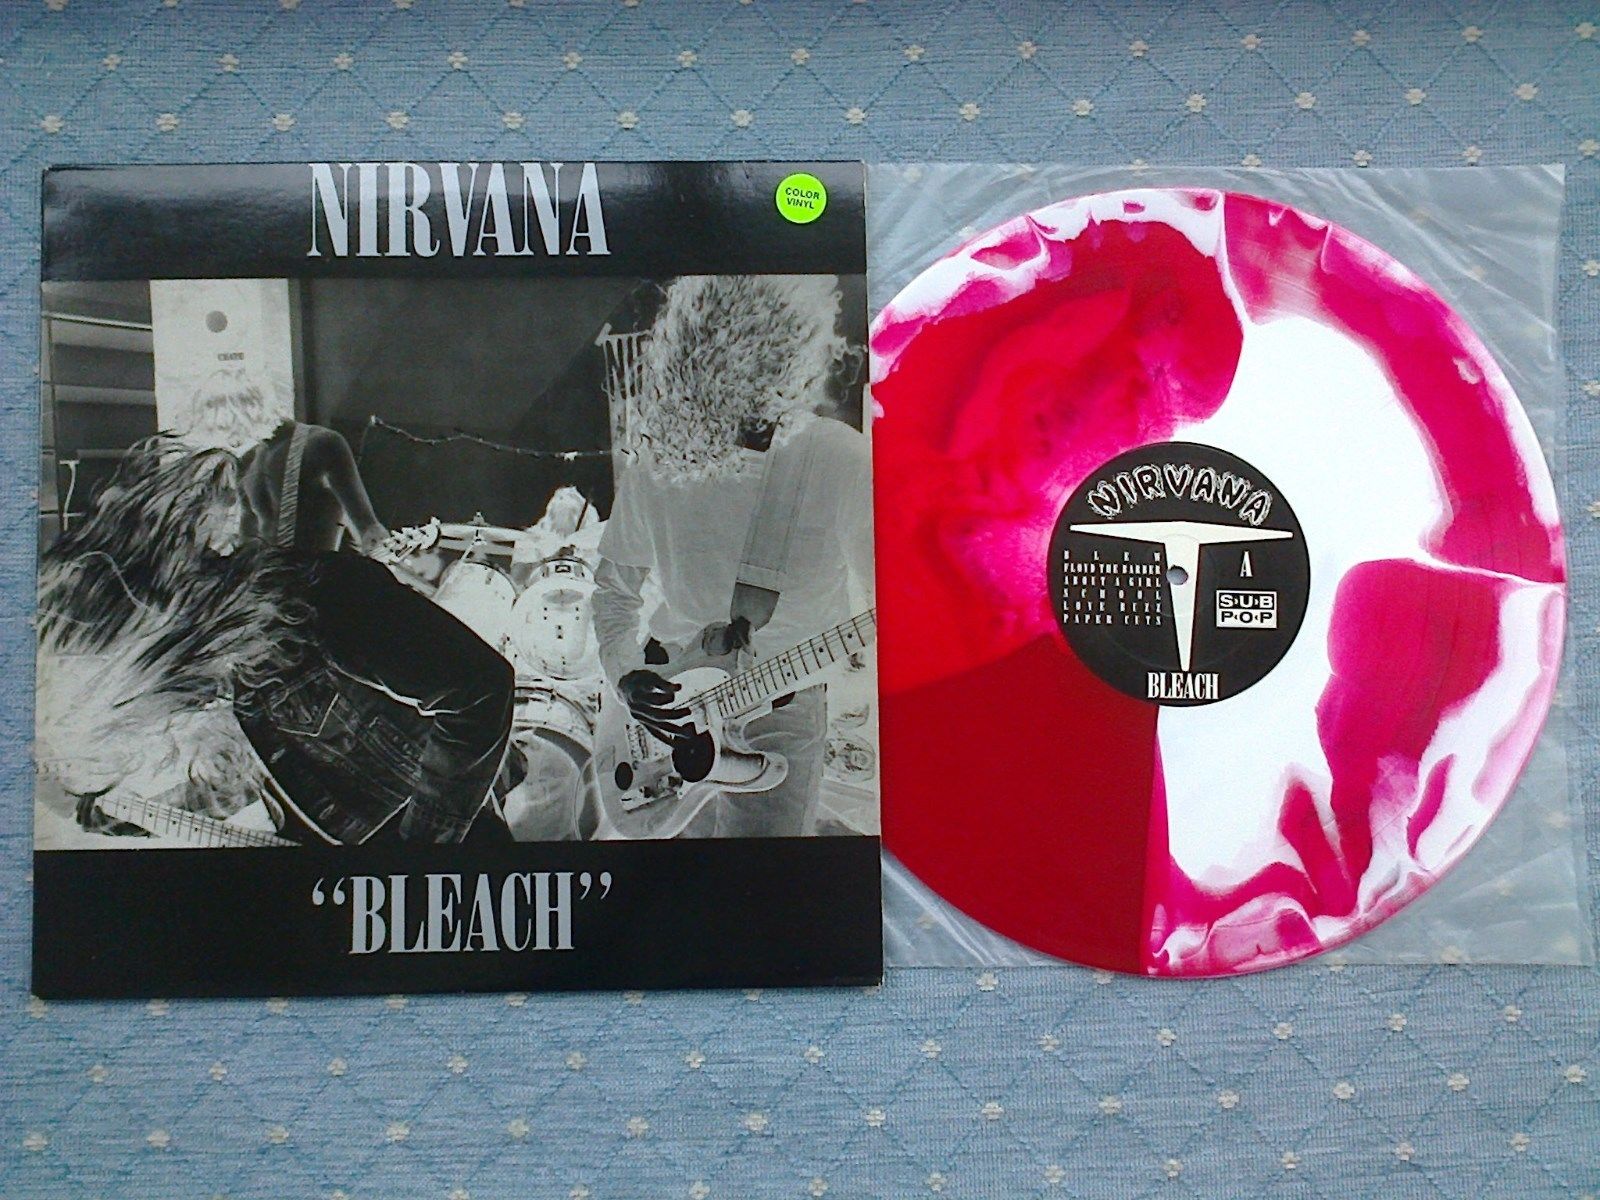 popsike.com - Nirvana record - Bleach Red / White Splatter c/w